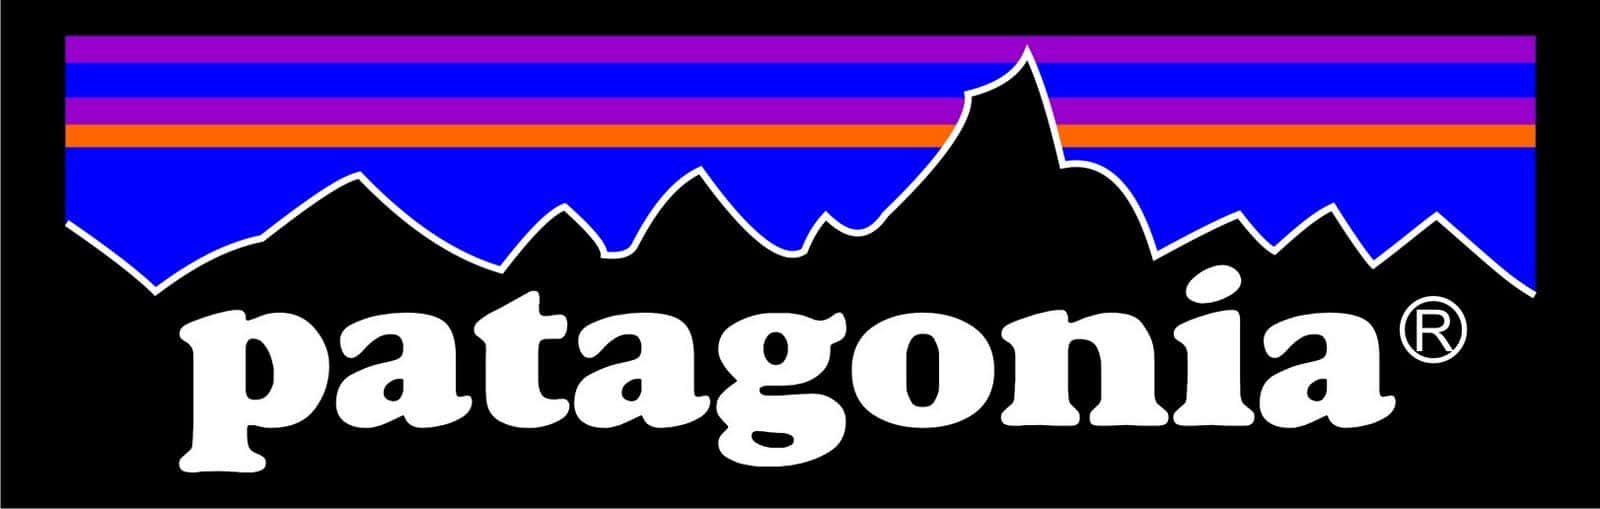 Patagonia Logo Background